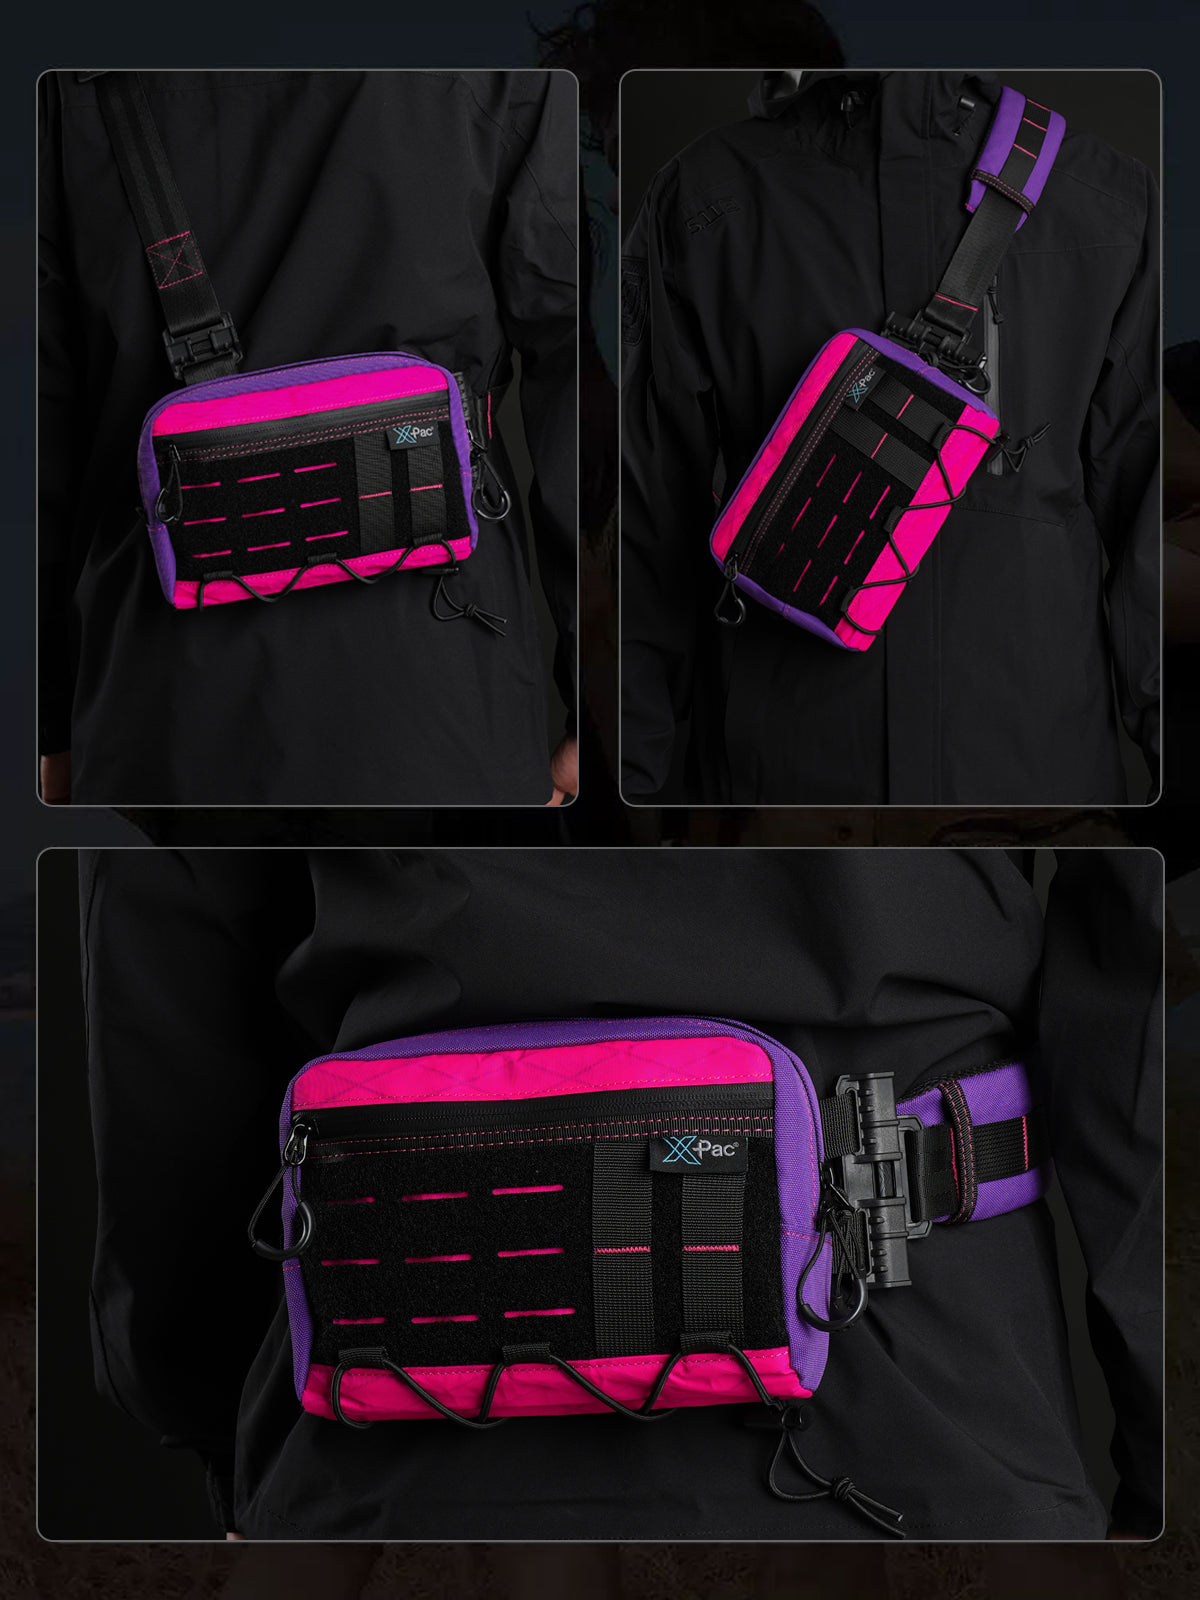 Cache L3S EDC Shoulder Bag （X-pac Pink）